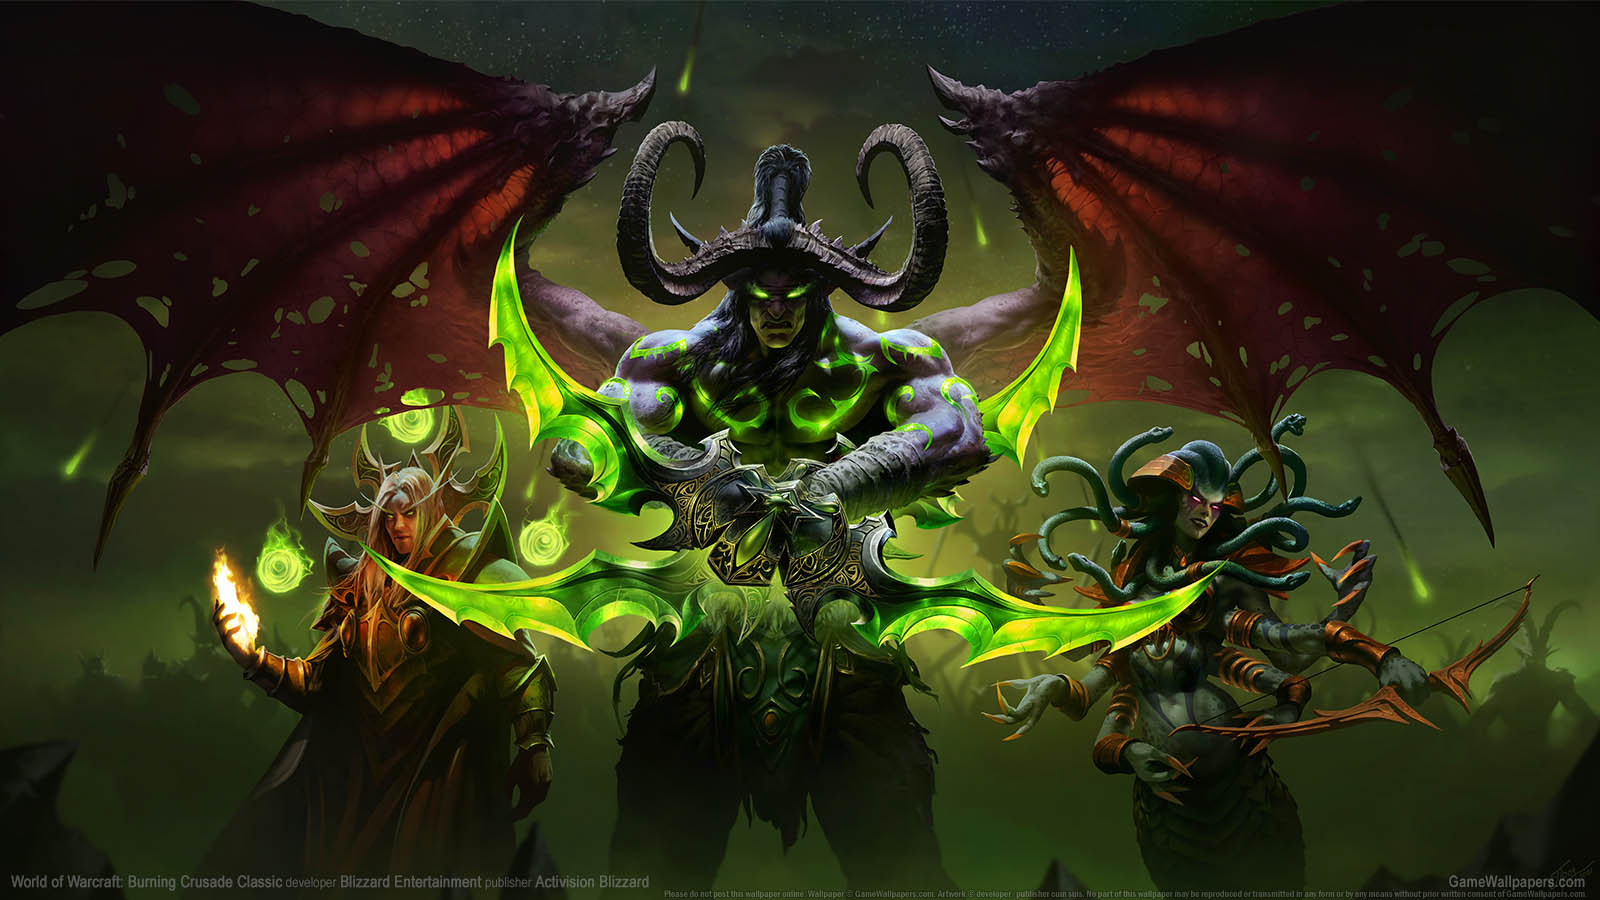 World of Warcraft: Burning Crusade Classic fond d'cran 01 1600x900